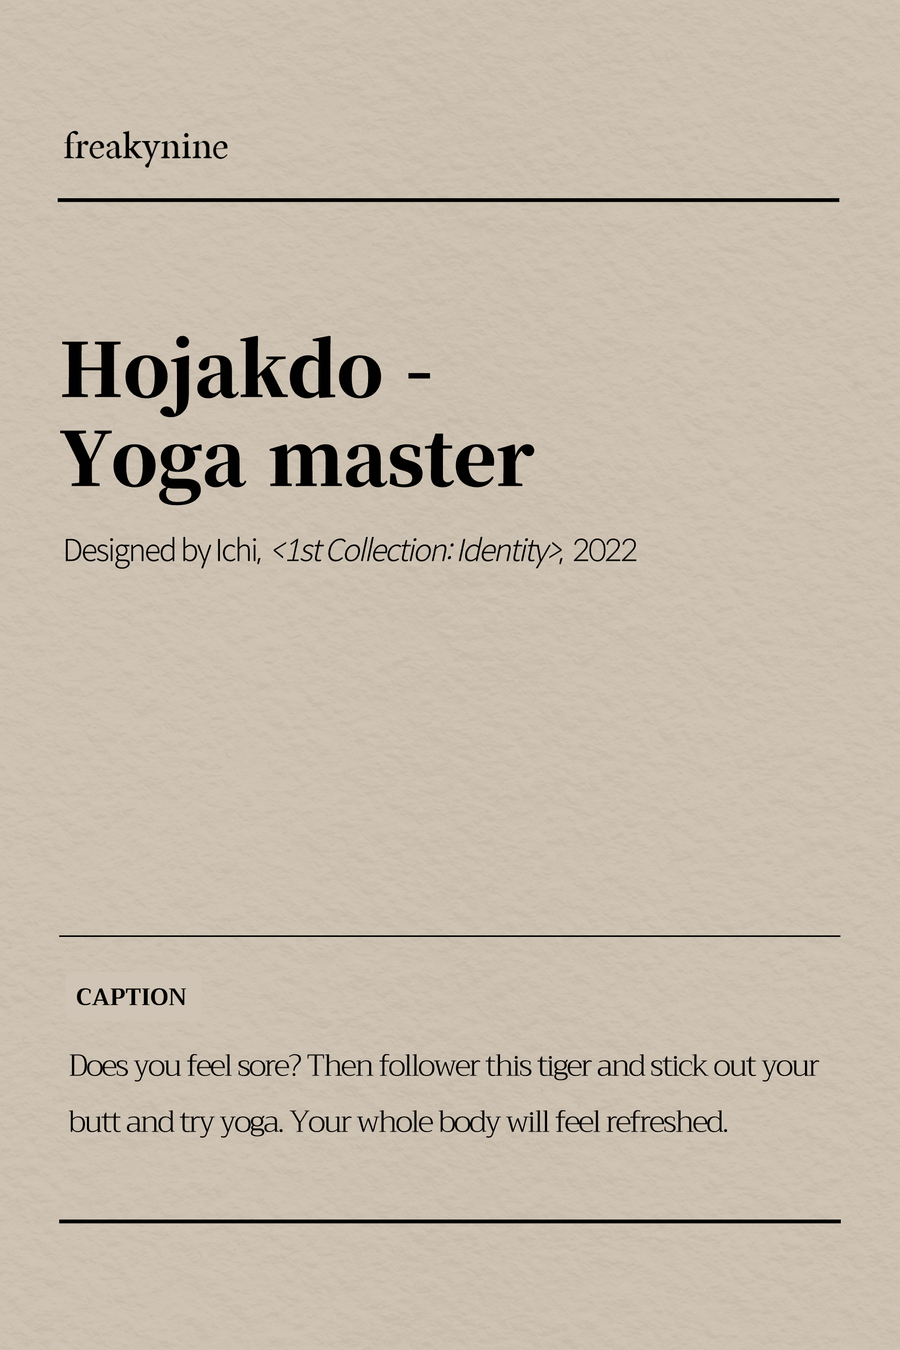 (Ichi) Hojakdo - Yoga master (2EA) - freakynine